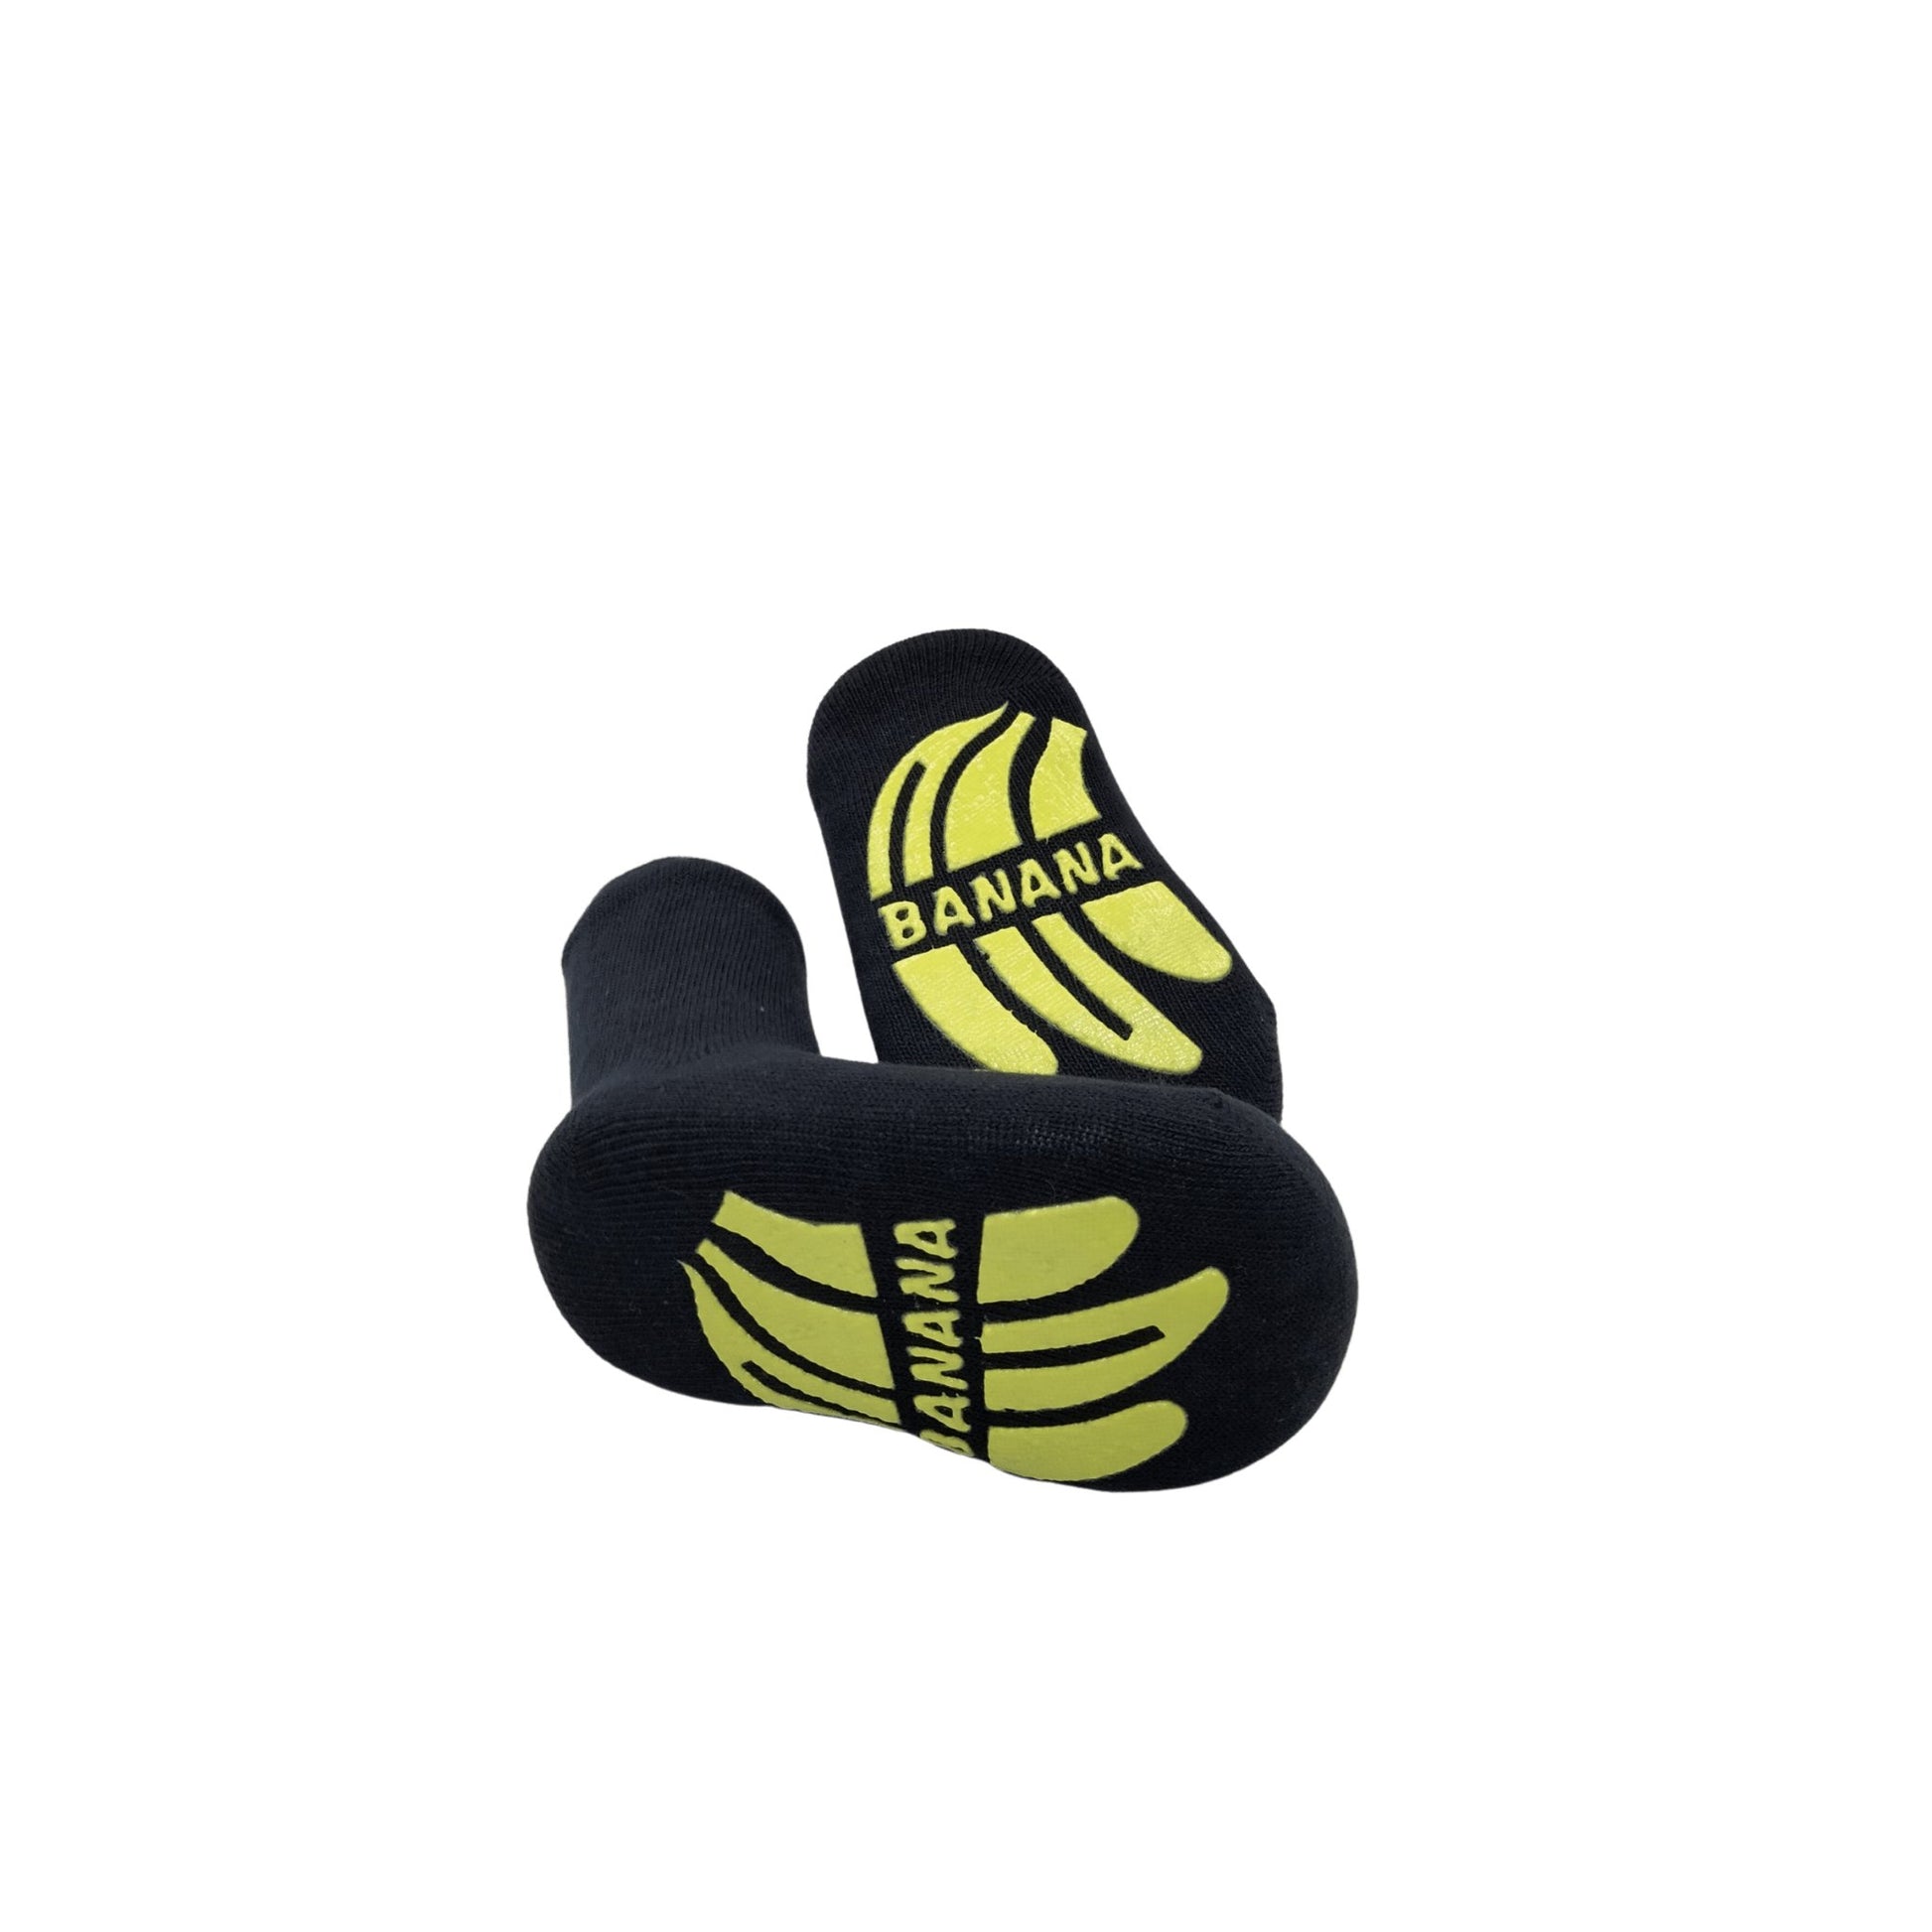 Banana Socks - Bearba